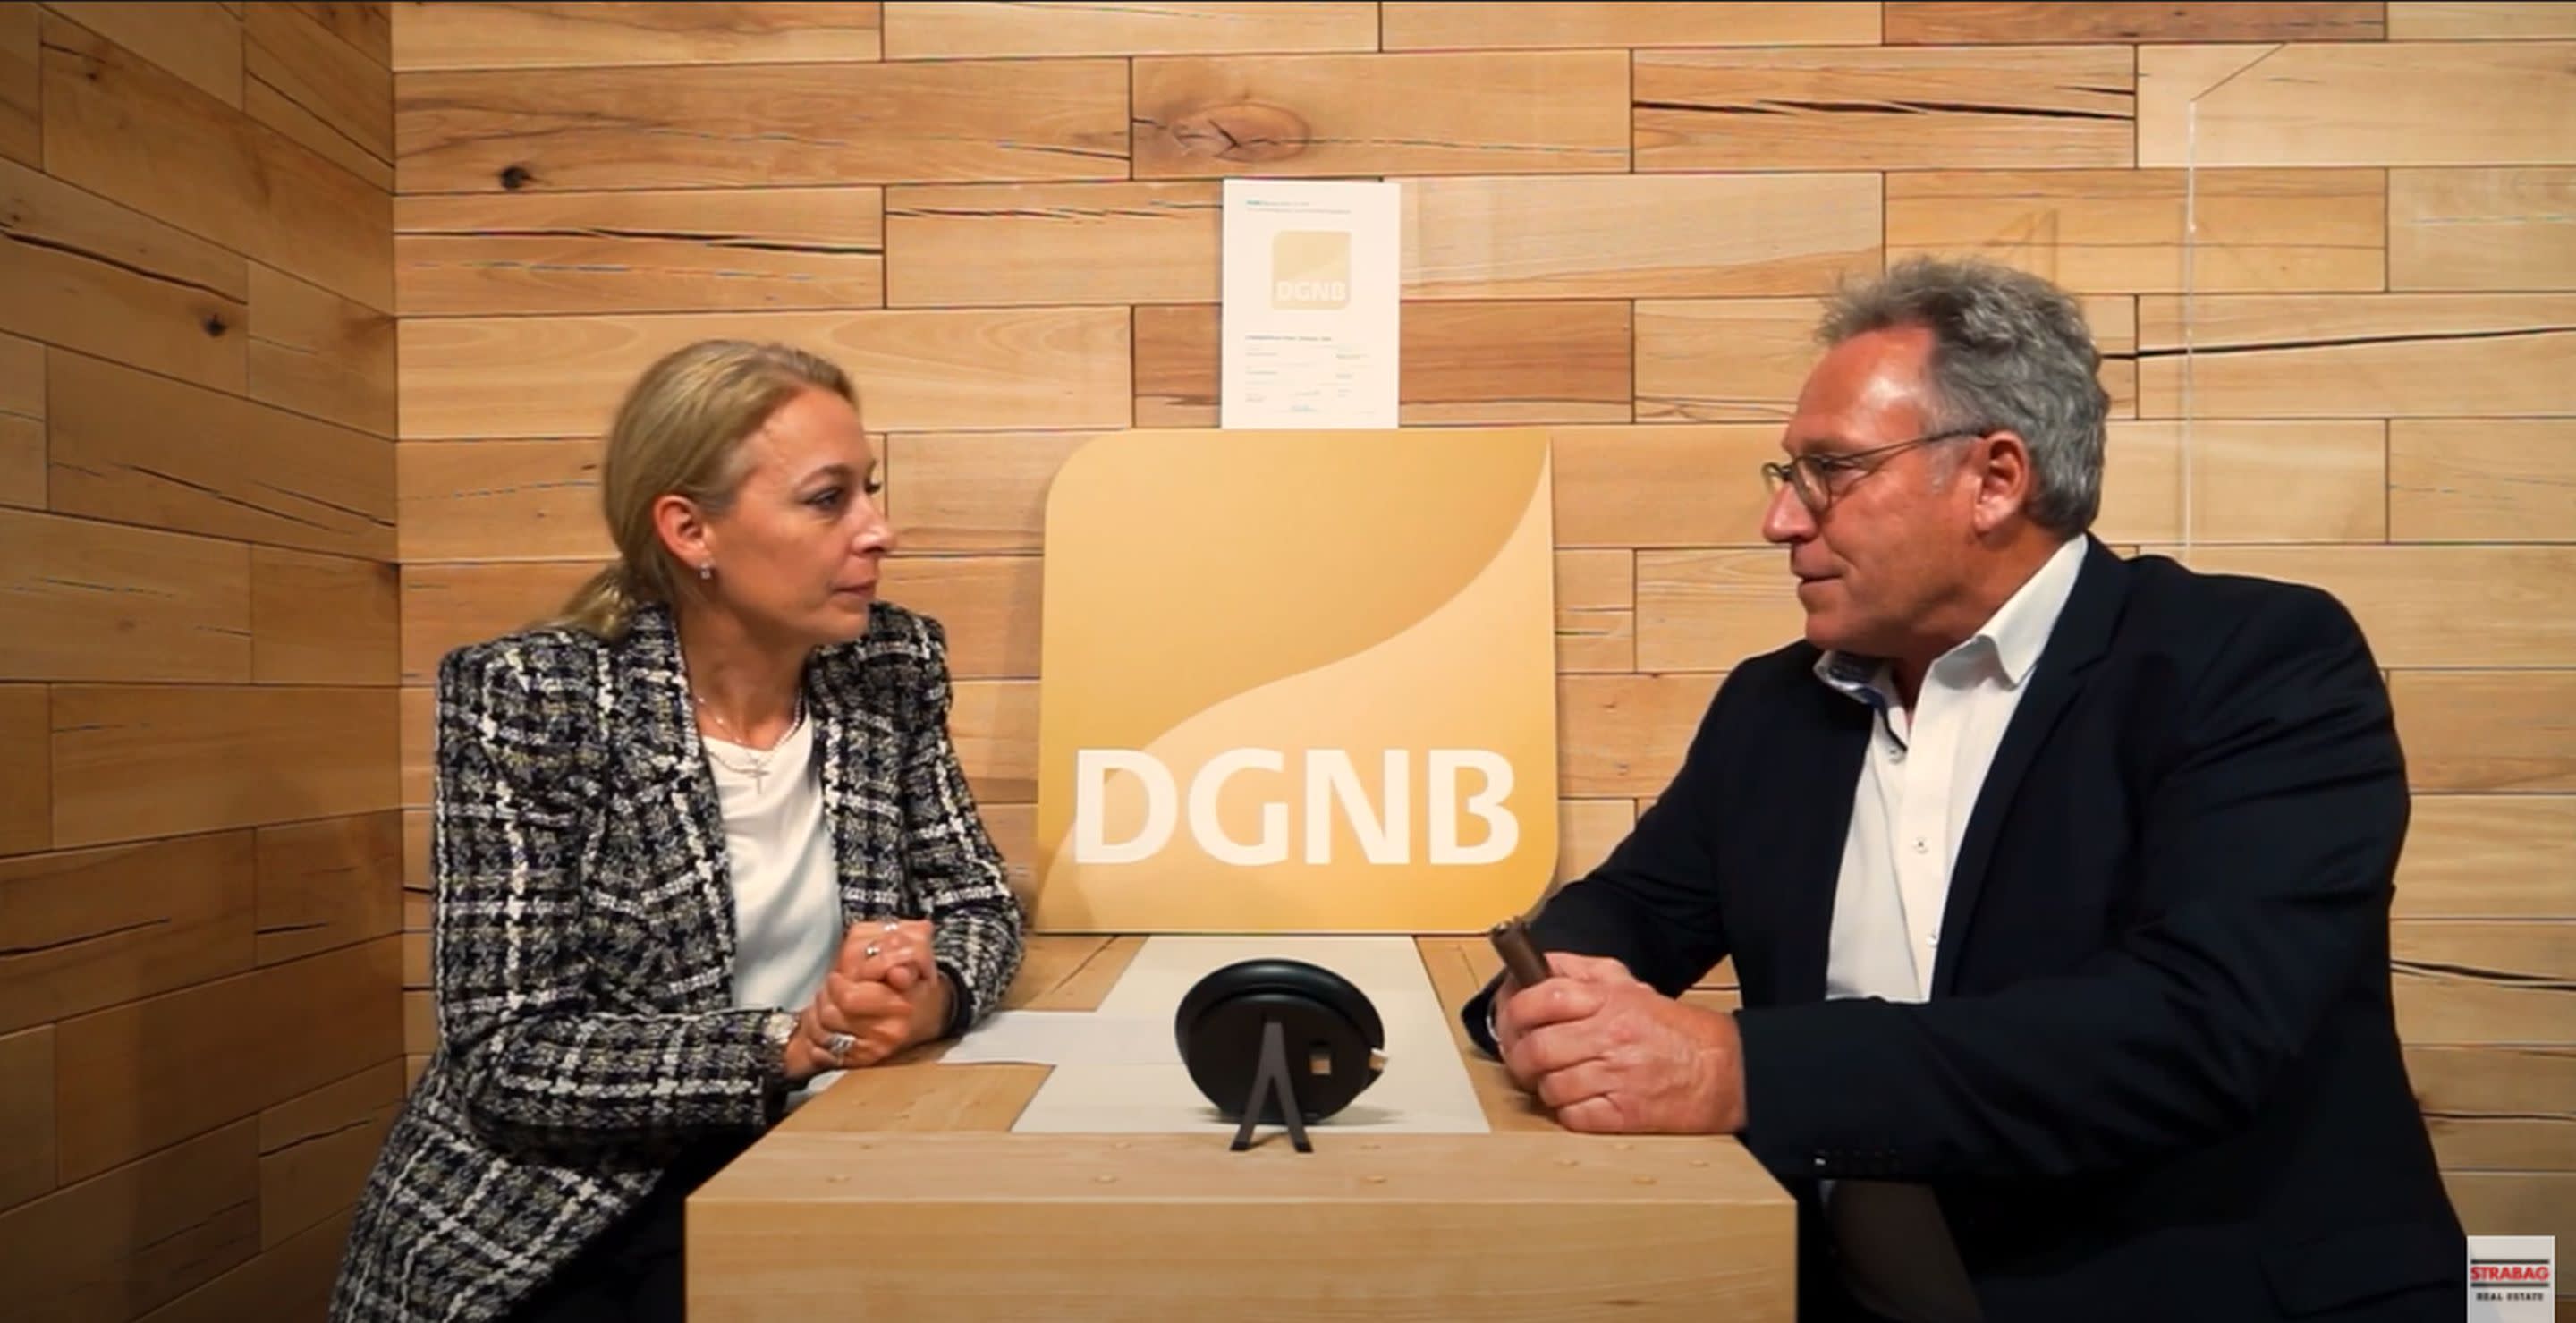 Bild: DGNB-Vorständin Frau Lemaitré im Interview mit SRE Technikchef Jörg Lin